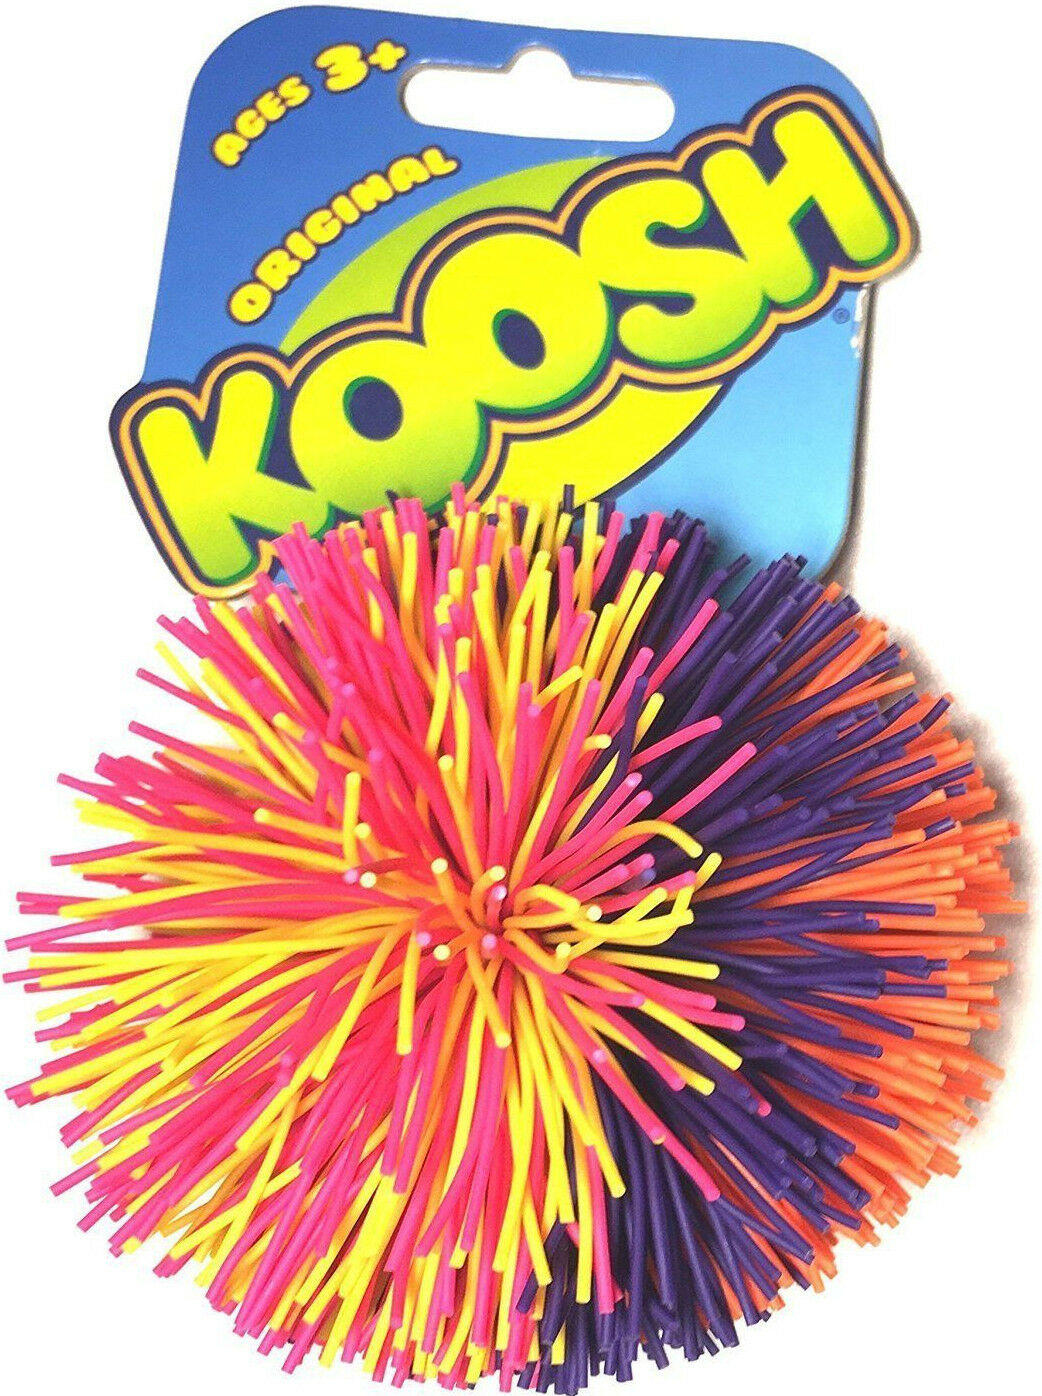 3.5" Koosh Ball Toy Hasbro Oddzon Fidget Natural Latex Rubber Stress Relax New